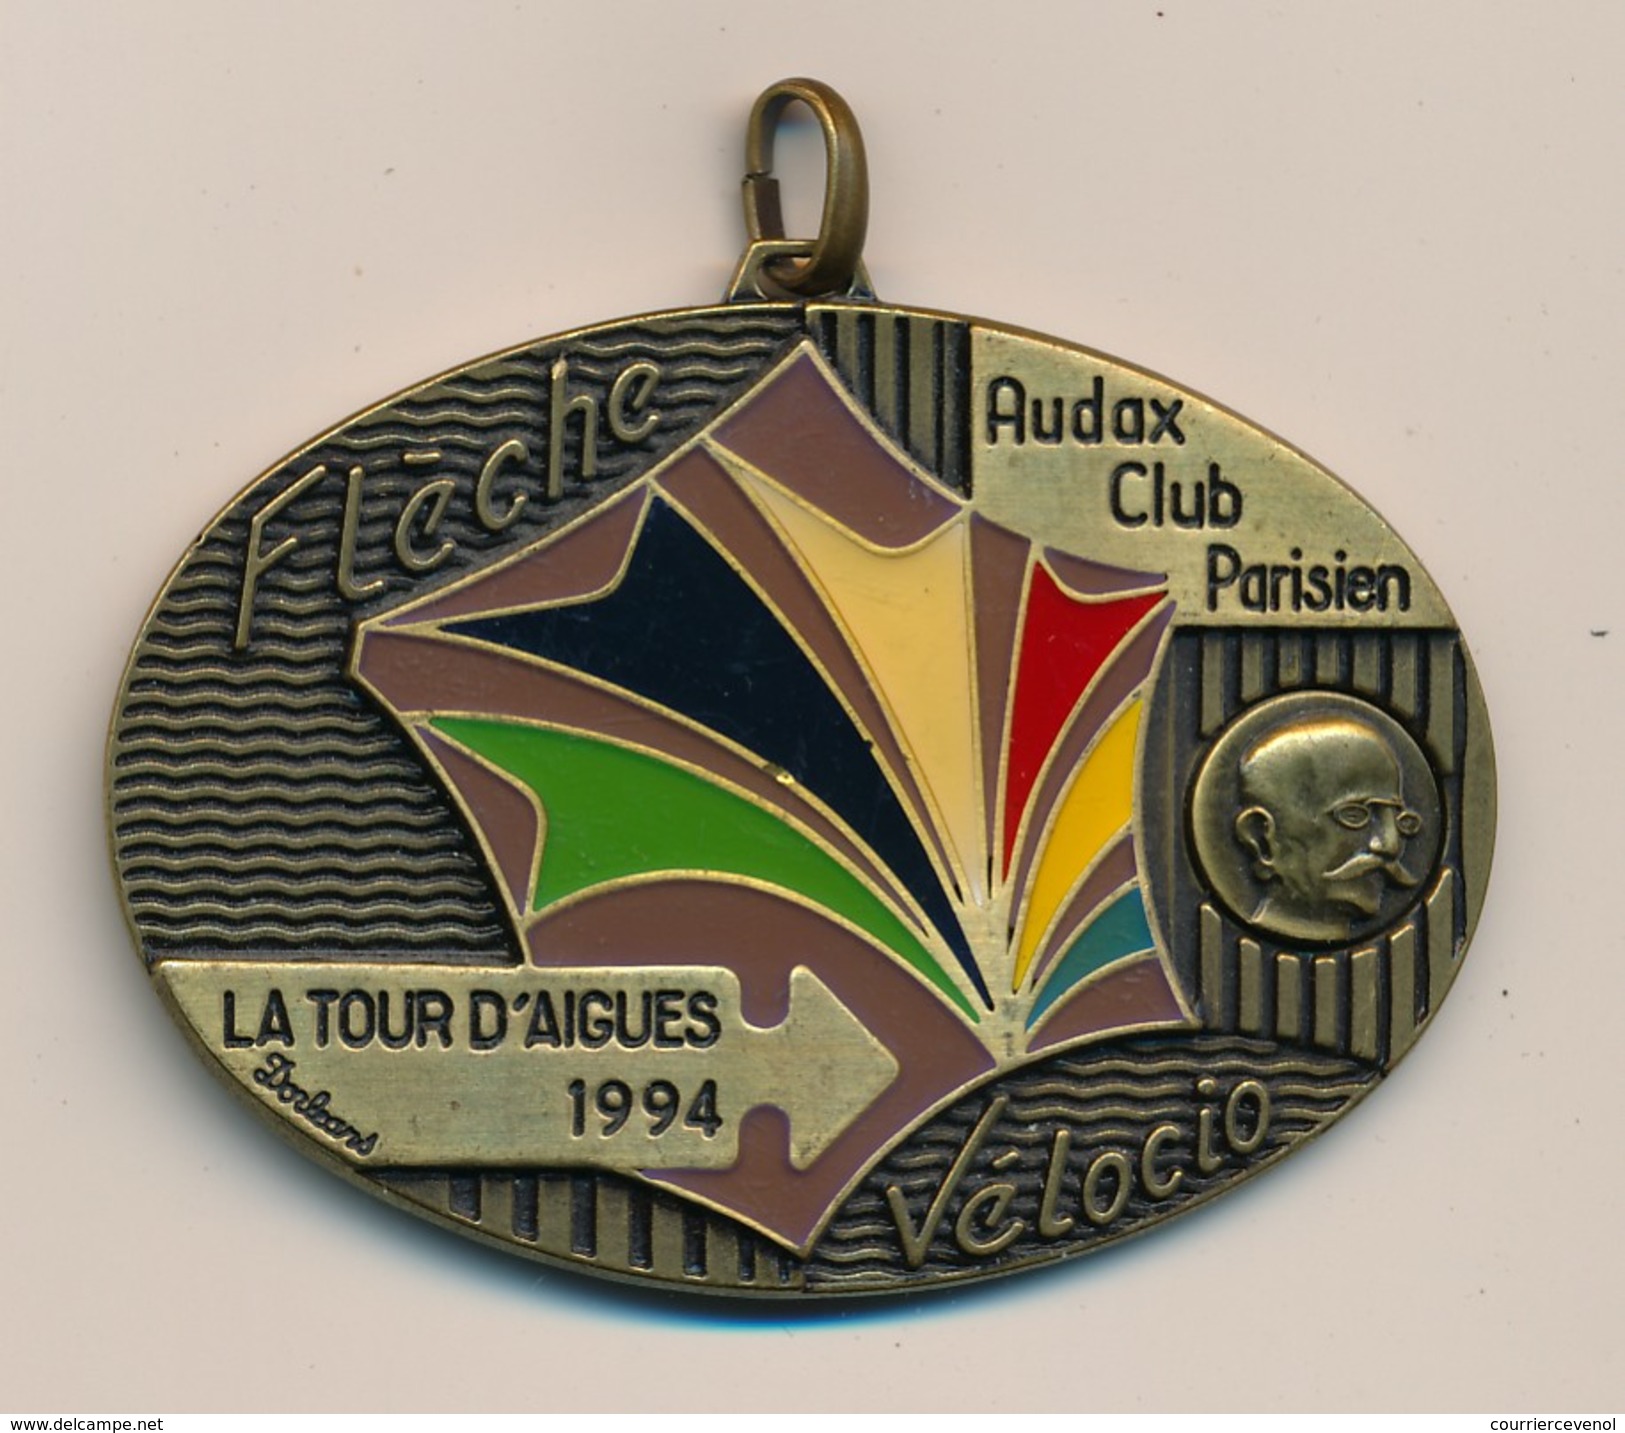 Médaille "Flèche Vélocio - La Tour D'Aigues 1994" - AUDAX CLUB PARISIEN - (Cyclotourisme) - Cycling